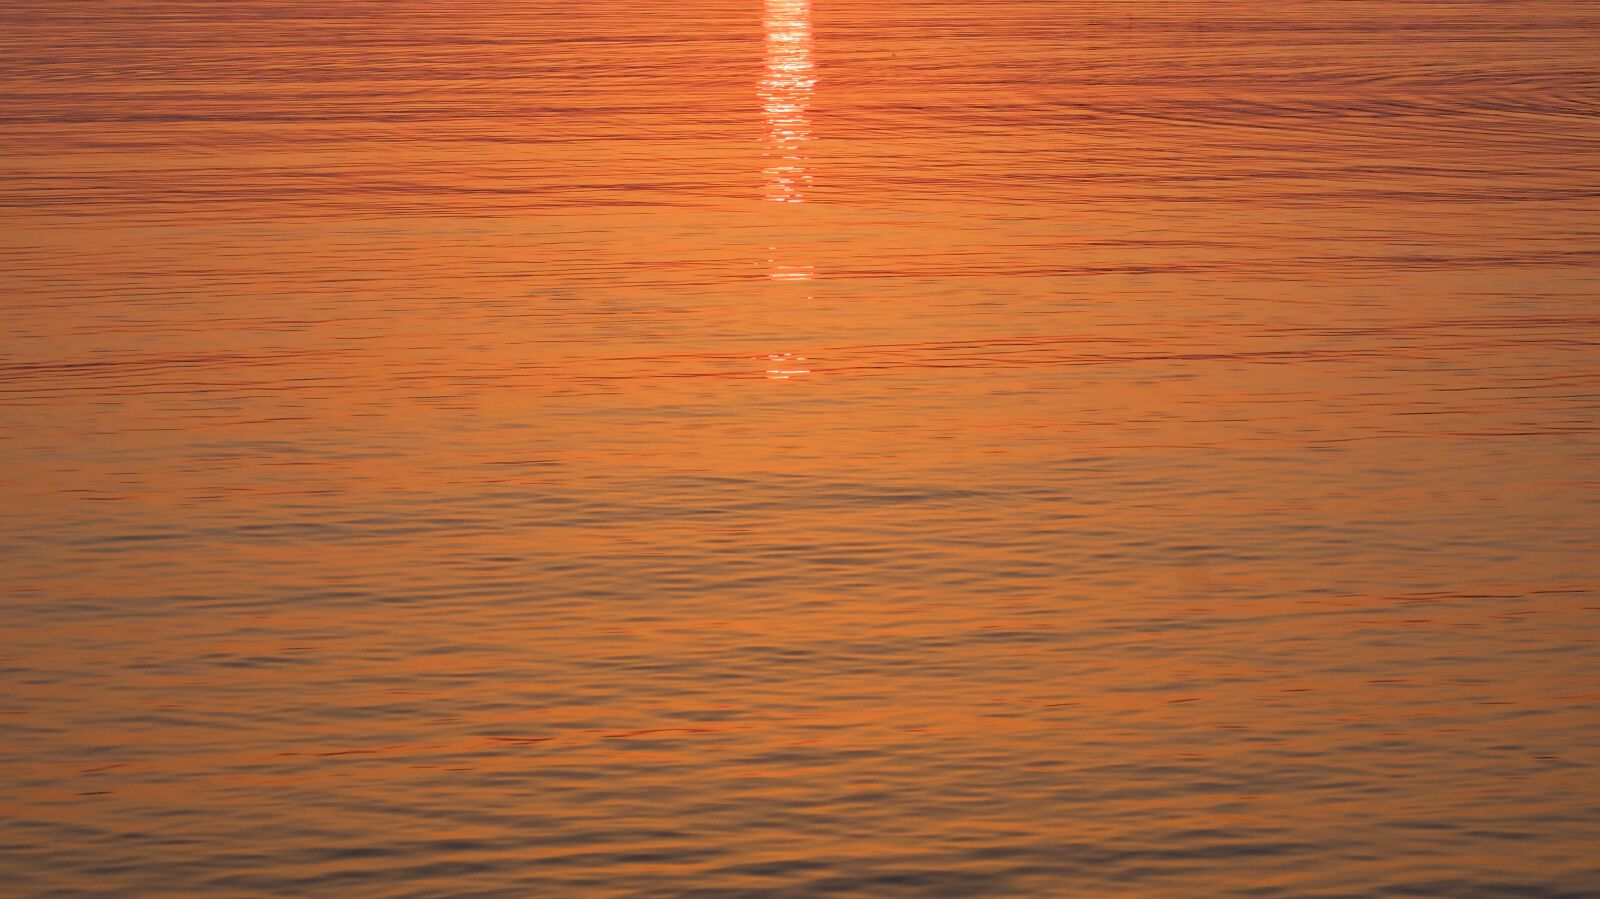 Fujifilm X20 sample photo. Sunset, summer, sunrise photography